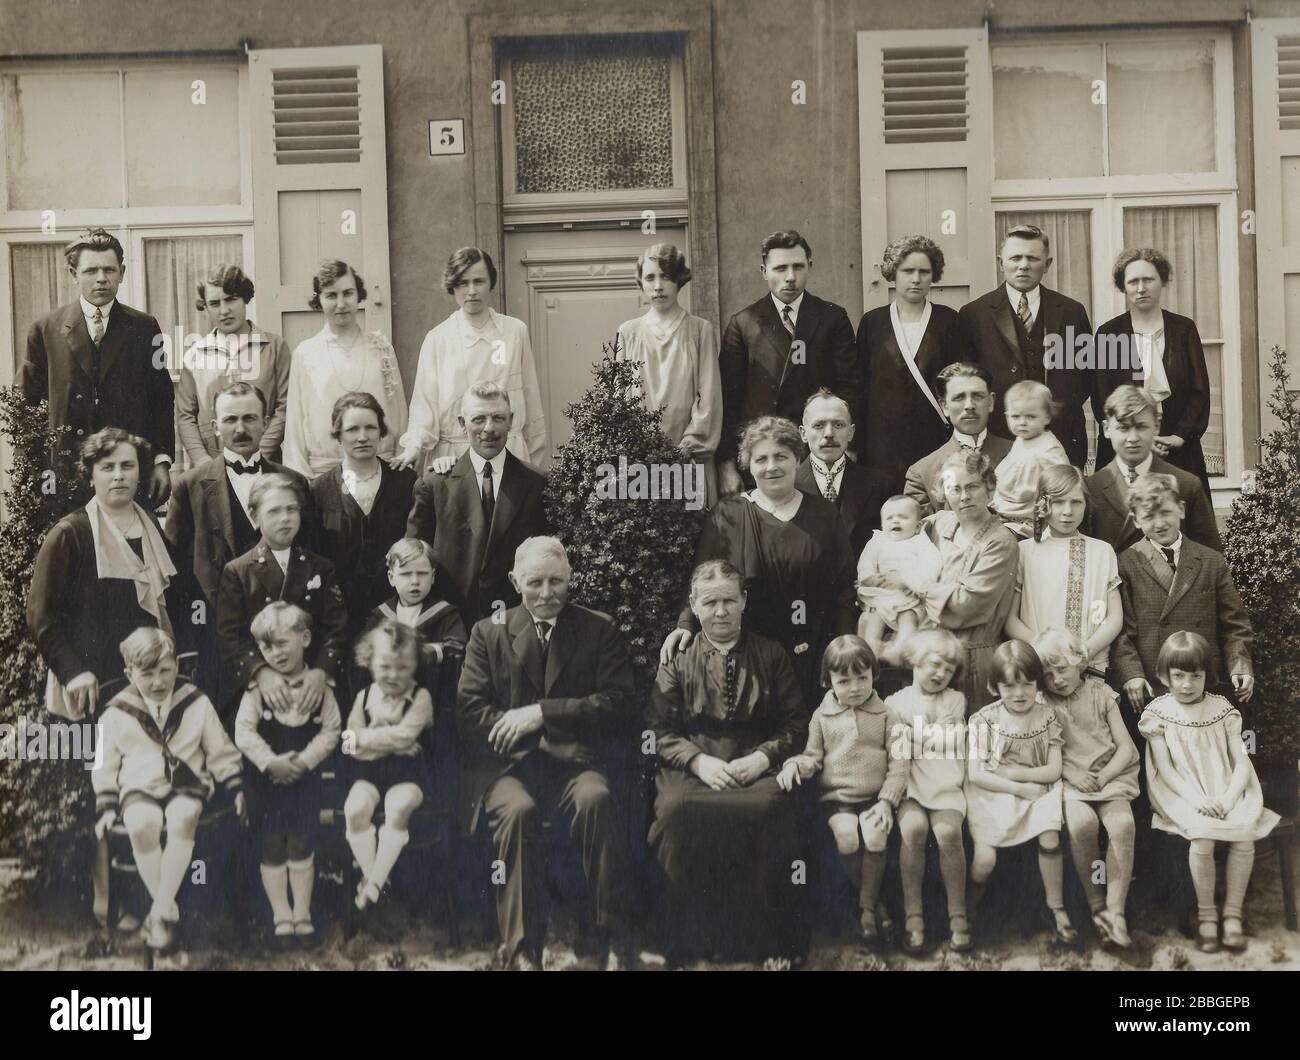 Grandes fotografías familiares frente a la casa de la familia o los abuelos, que datan de alrededor del año 1930, tomadas en Hoboken (Amberes), Bélgica Foto de stock